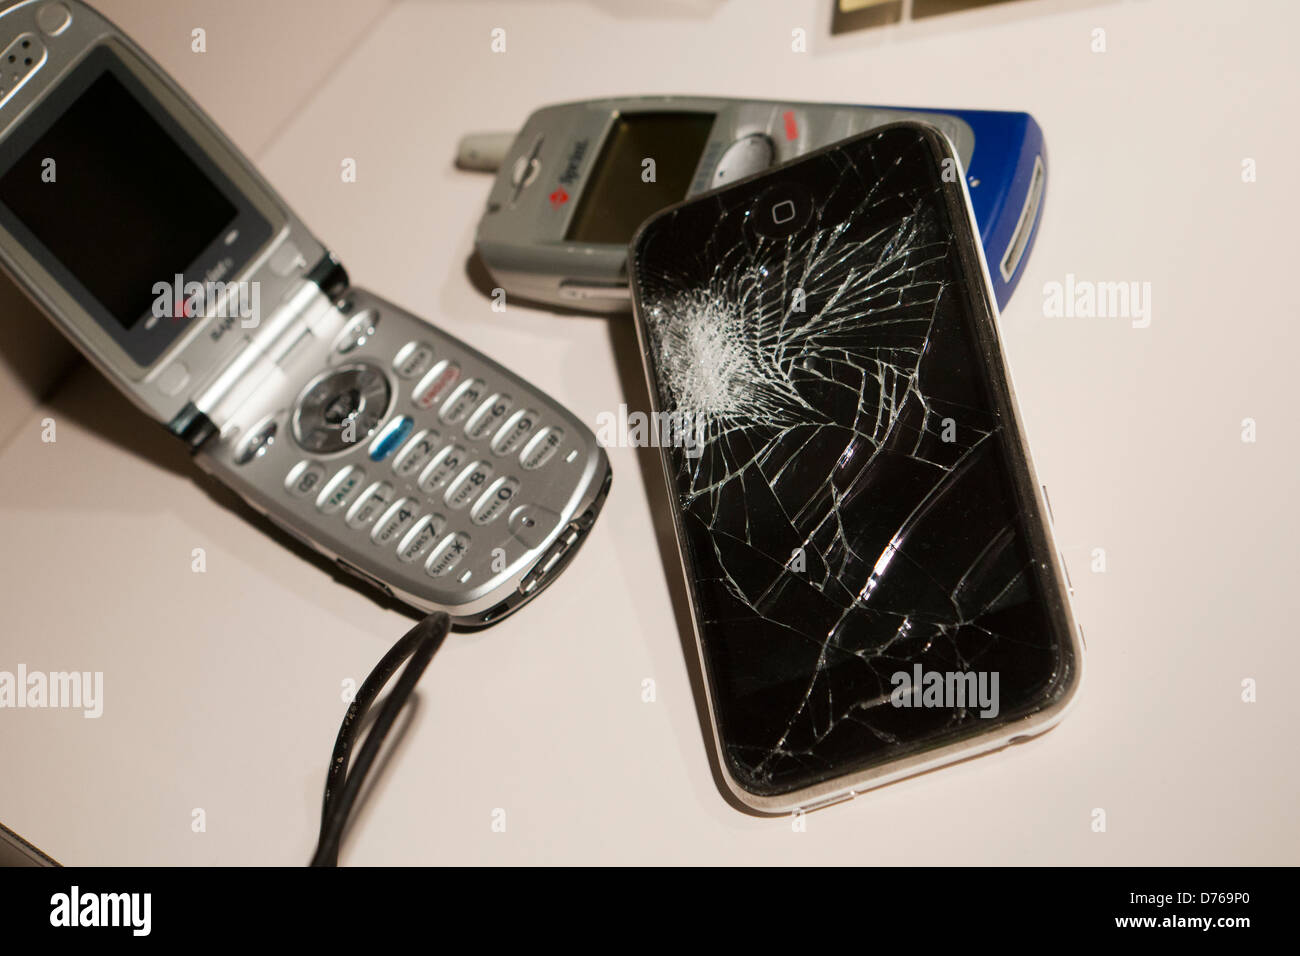 Broken smart phone display Stock Photo